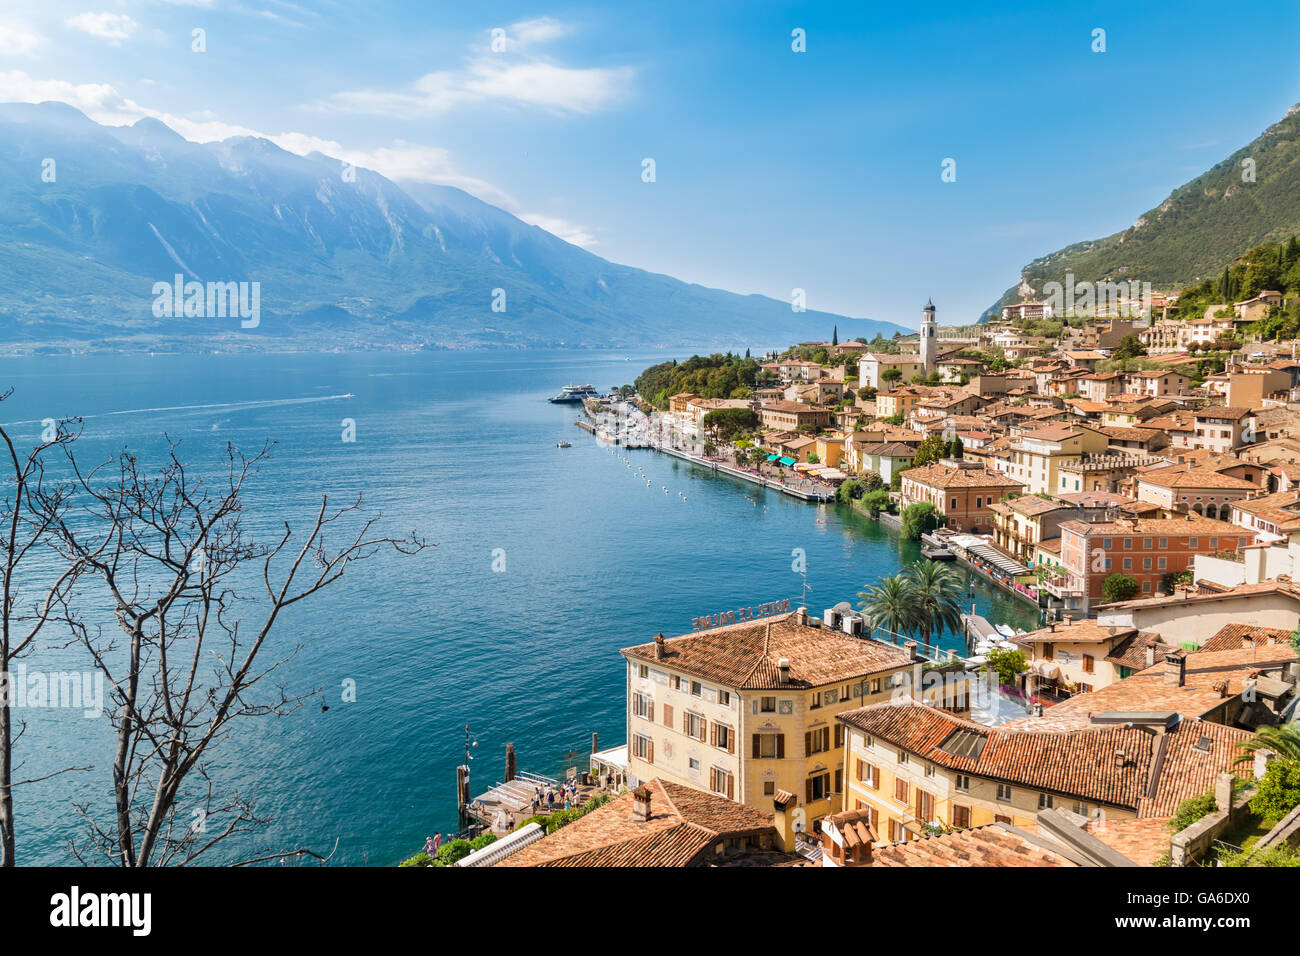 Panorama de Limone sul Garda, une petite ville sur le lac de Garde, Italie. Banque D'Images